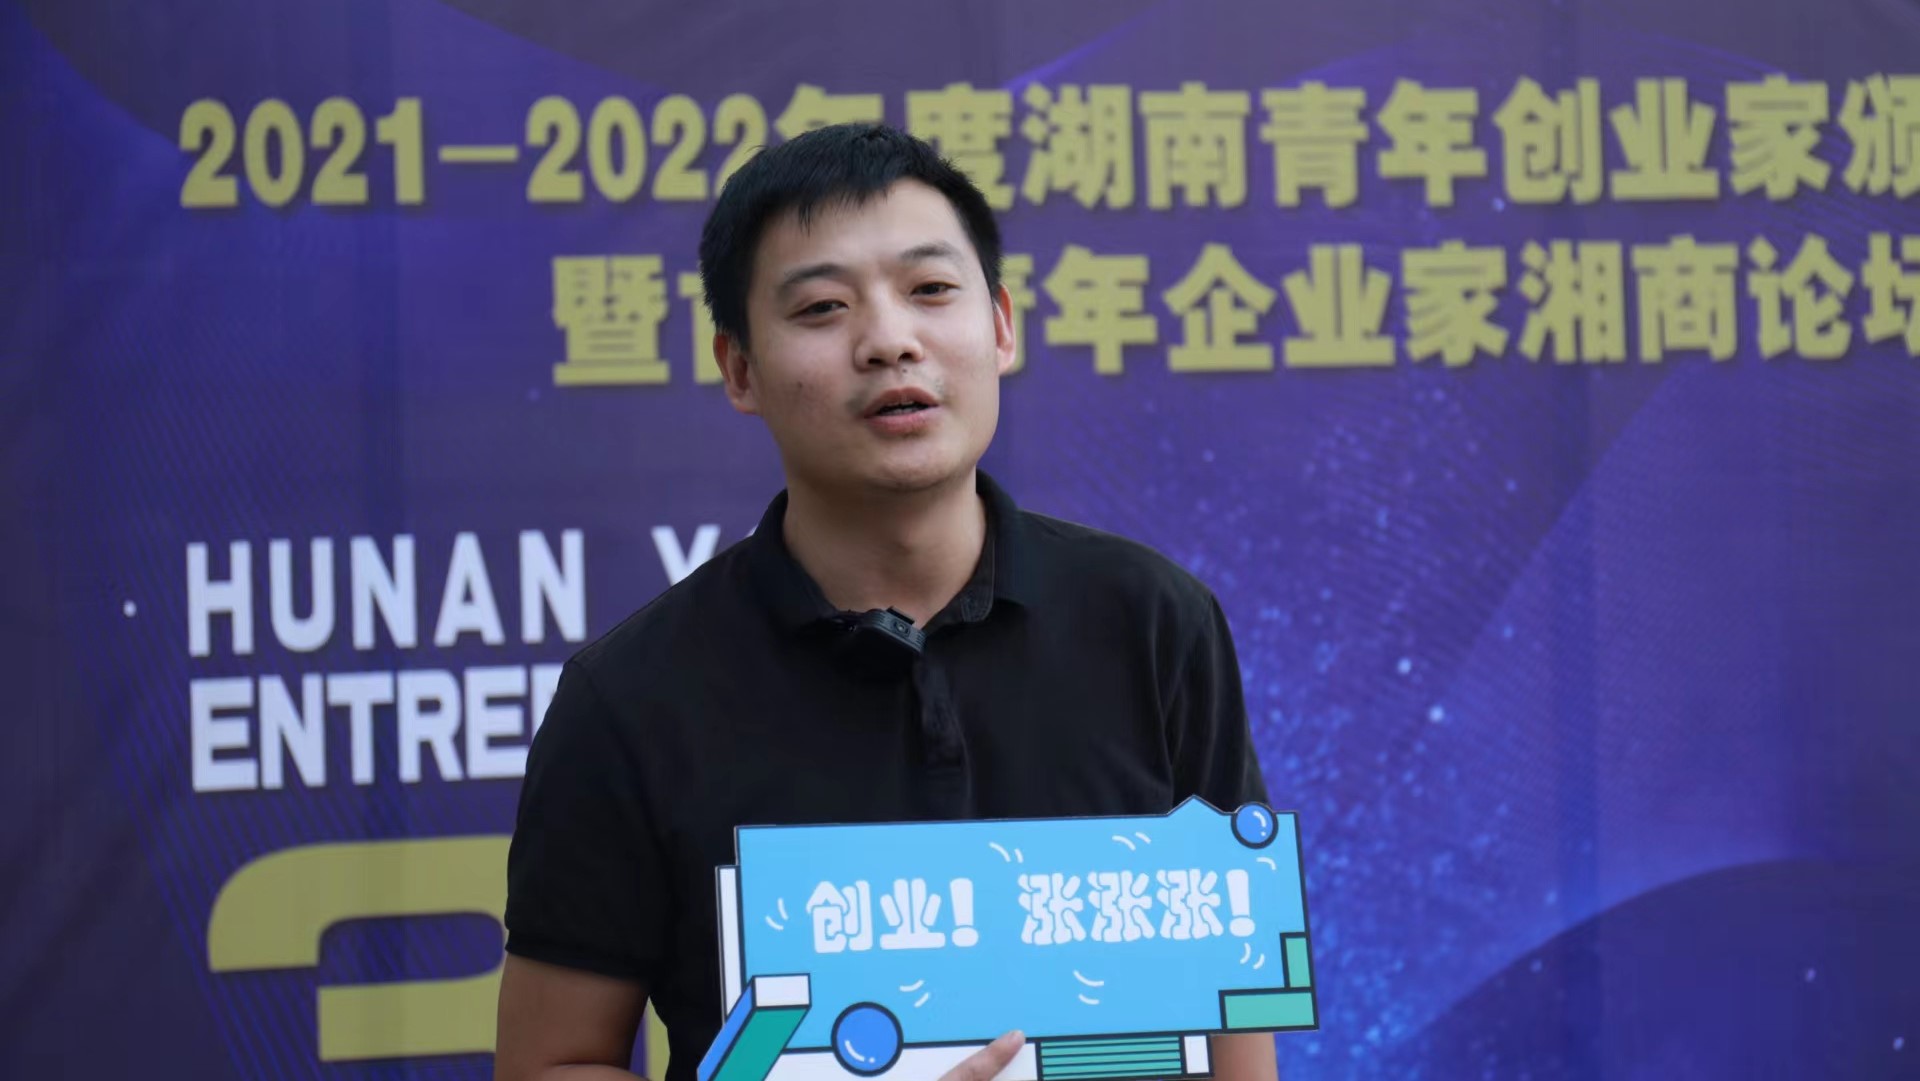 瑞华乡墅祝捷被授予“2021-2022年度湖南青年创业家”奖